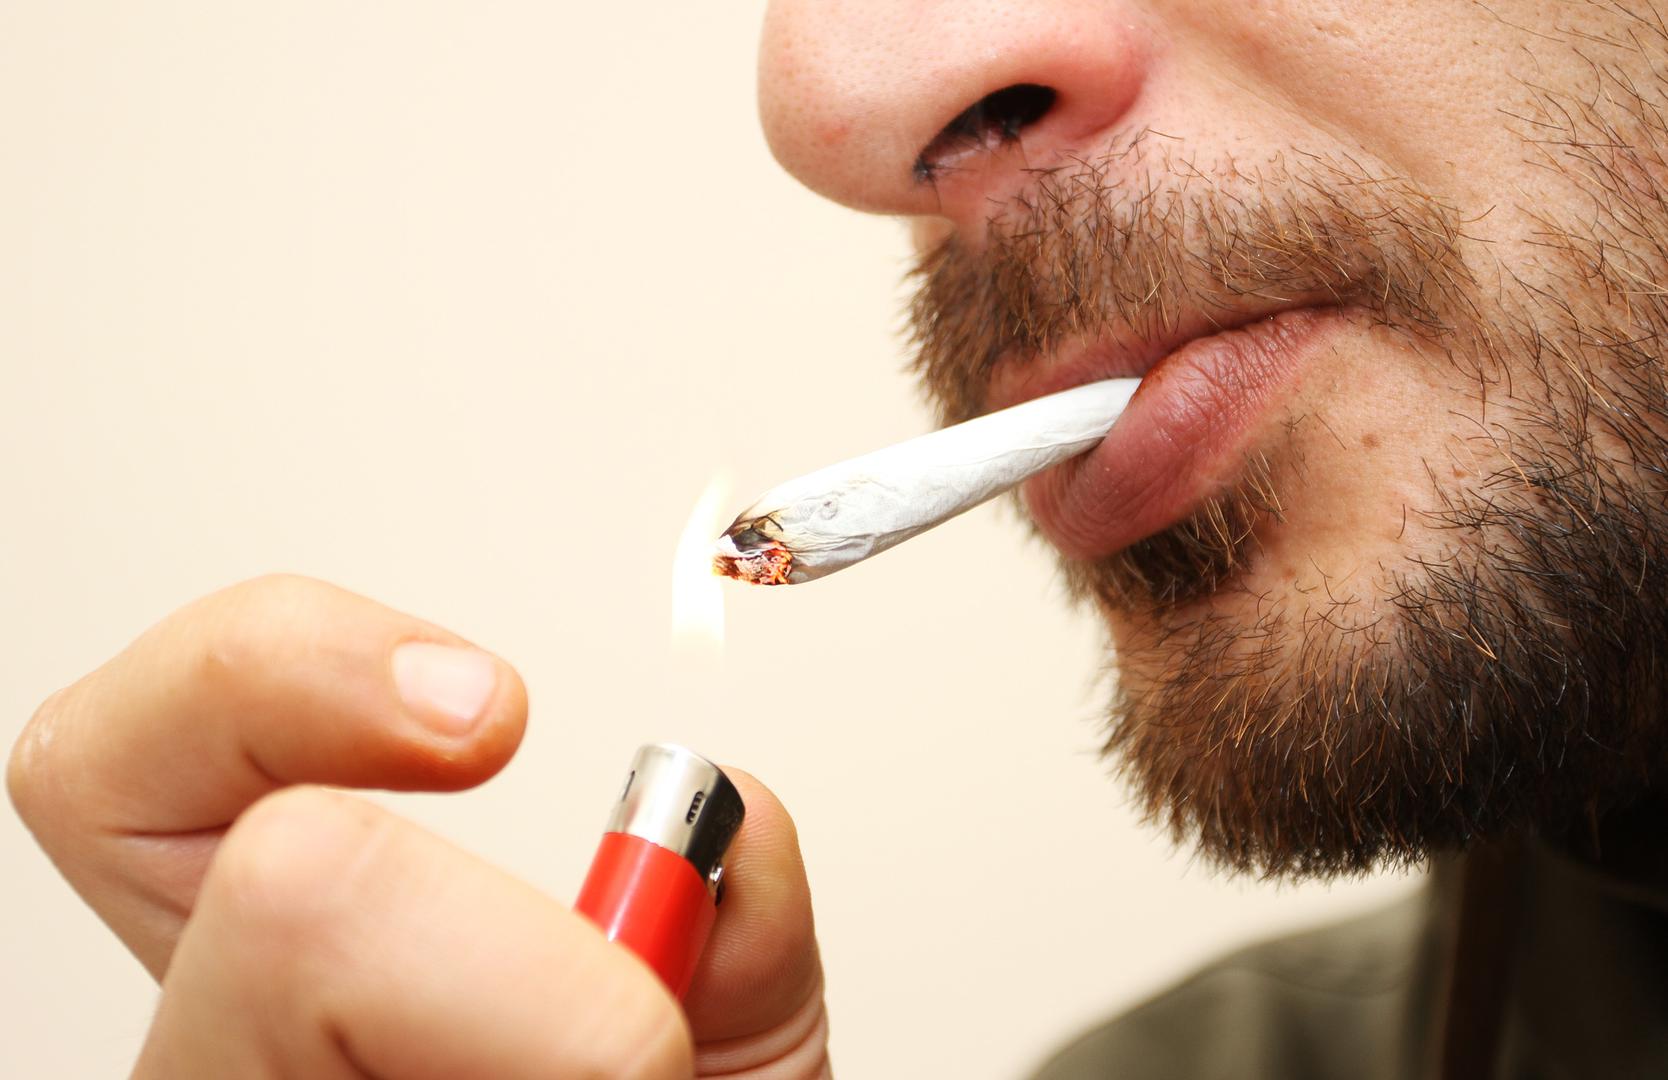 Pušenje - Mnogi misle kako pušenje negativno utječe samo na pluća. To je pogrešno. Opasni sastojci u cigaretama ugrožavaju cjelokupno zdravlje, tako i krvne žile. 